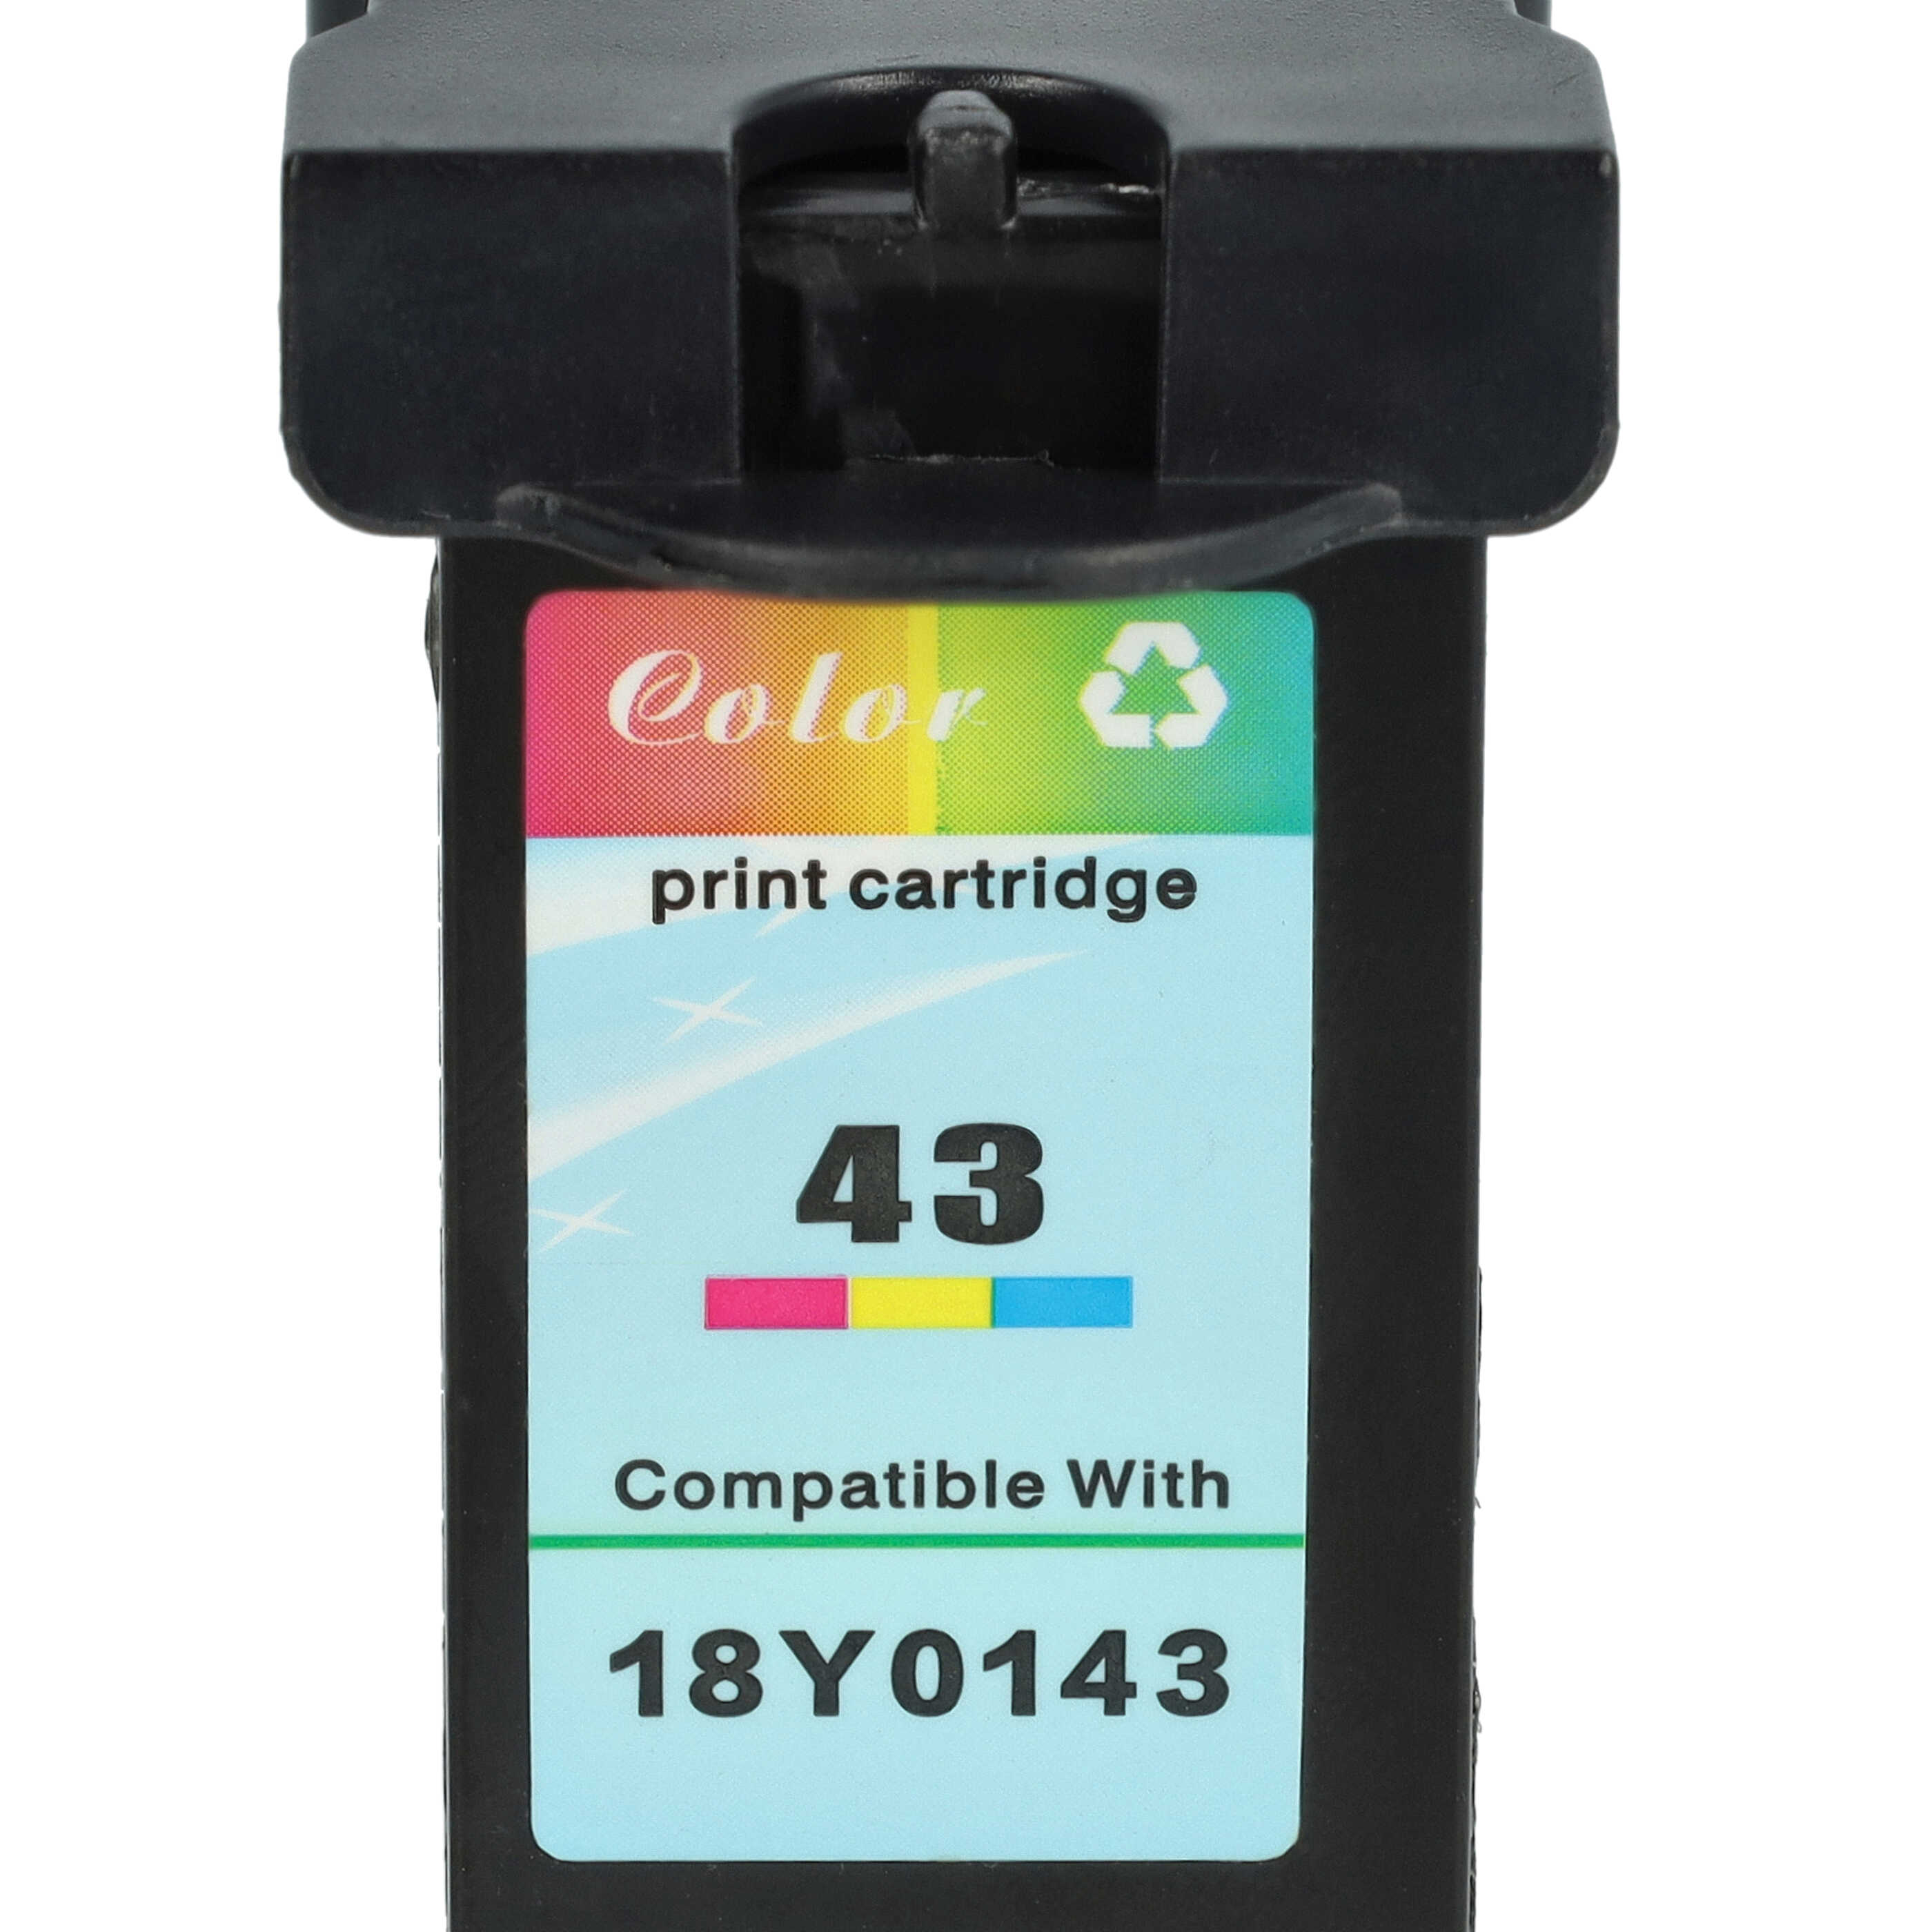 Cartucho tinta reemplaza Lexmark 18Y0341E, 18Y0141E, 18Y0143 para impresora Lexmark - C/M/Y rellenado 18 ml